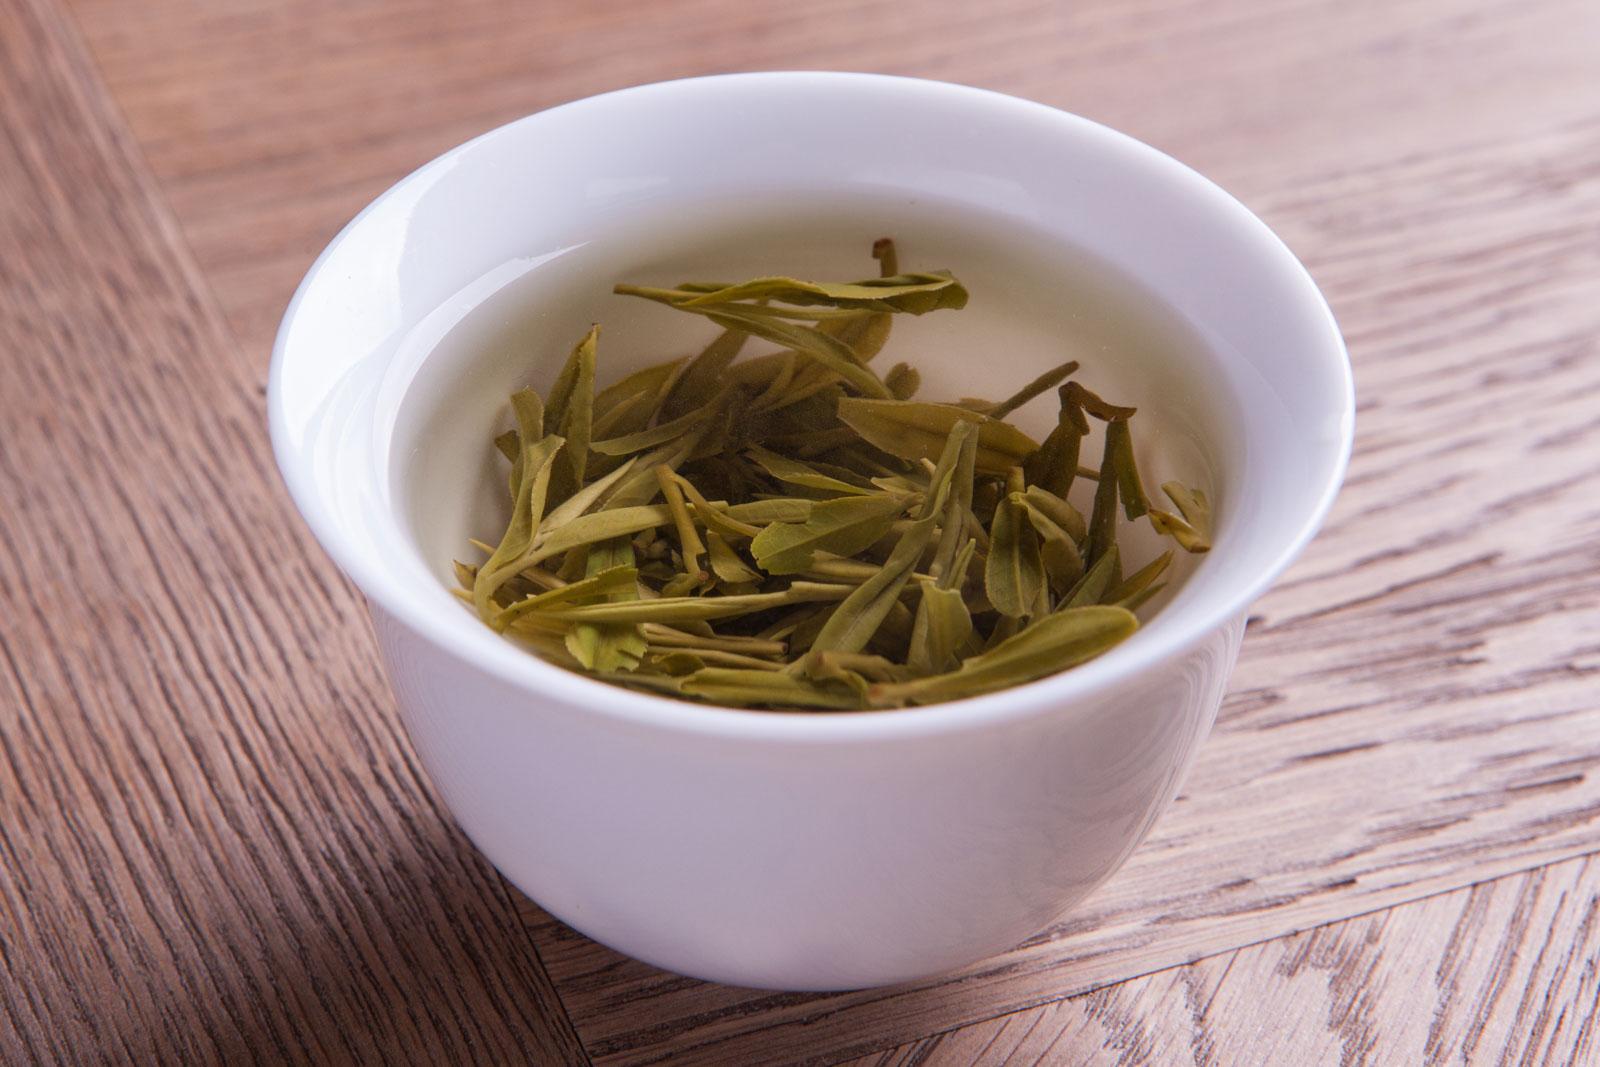 正解:烘青绿茶就是绿茶最后一步干燥程序用的是烘干的工艺常见的烘青